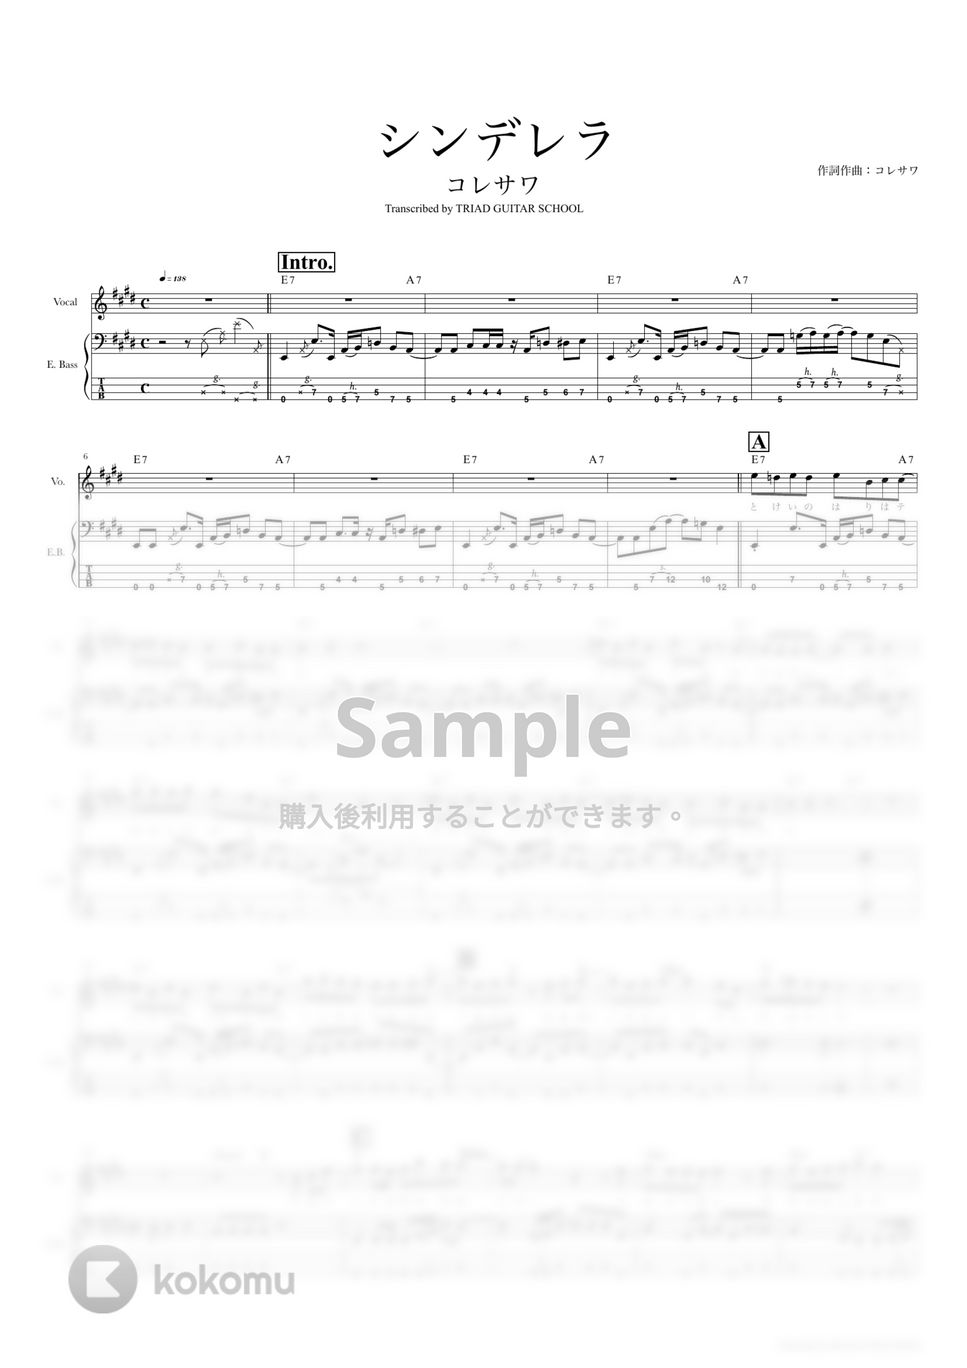 コレサワ - シンデレラ (ベーススコア・歌詞・コード付き) by TRIAD GUITAR SCHOOL